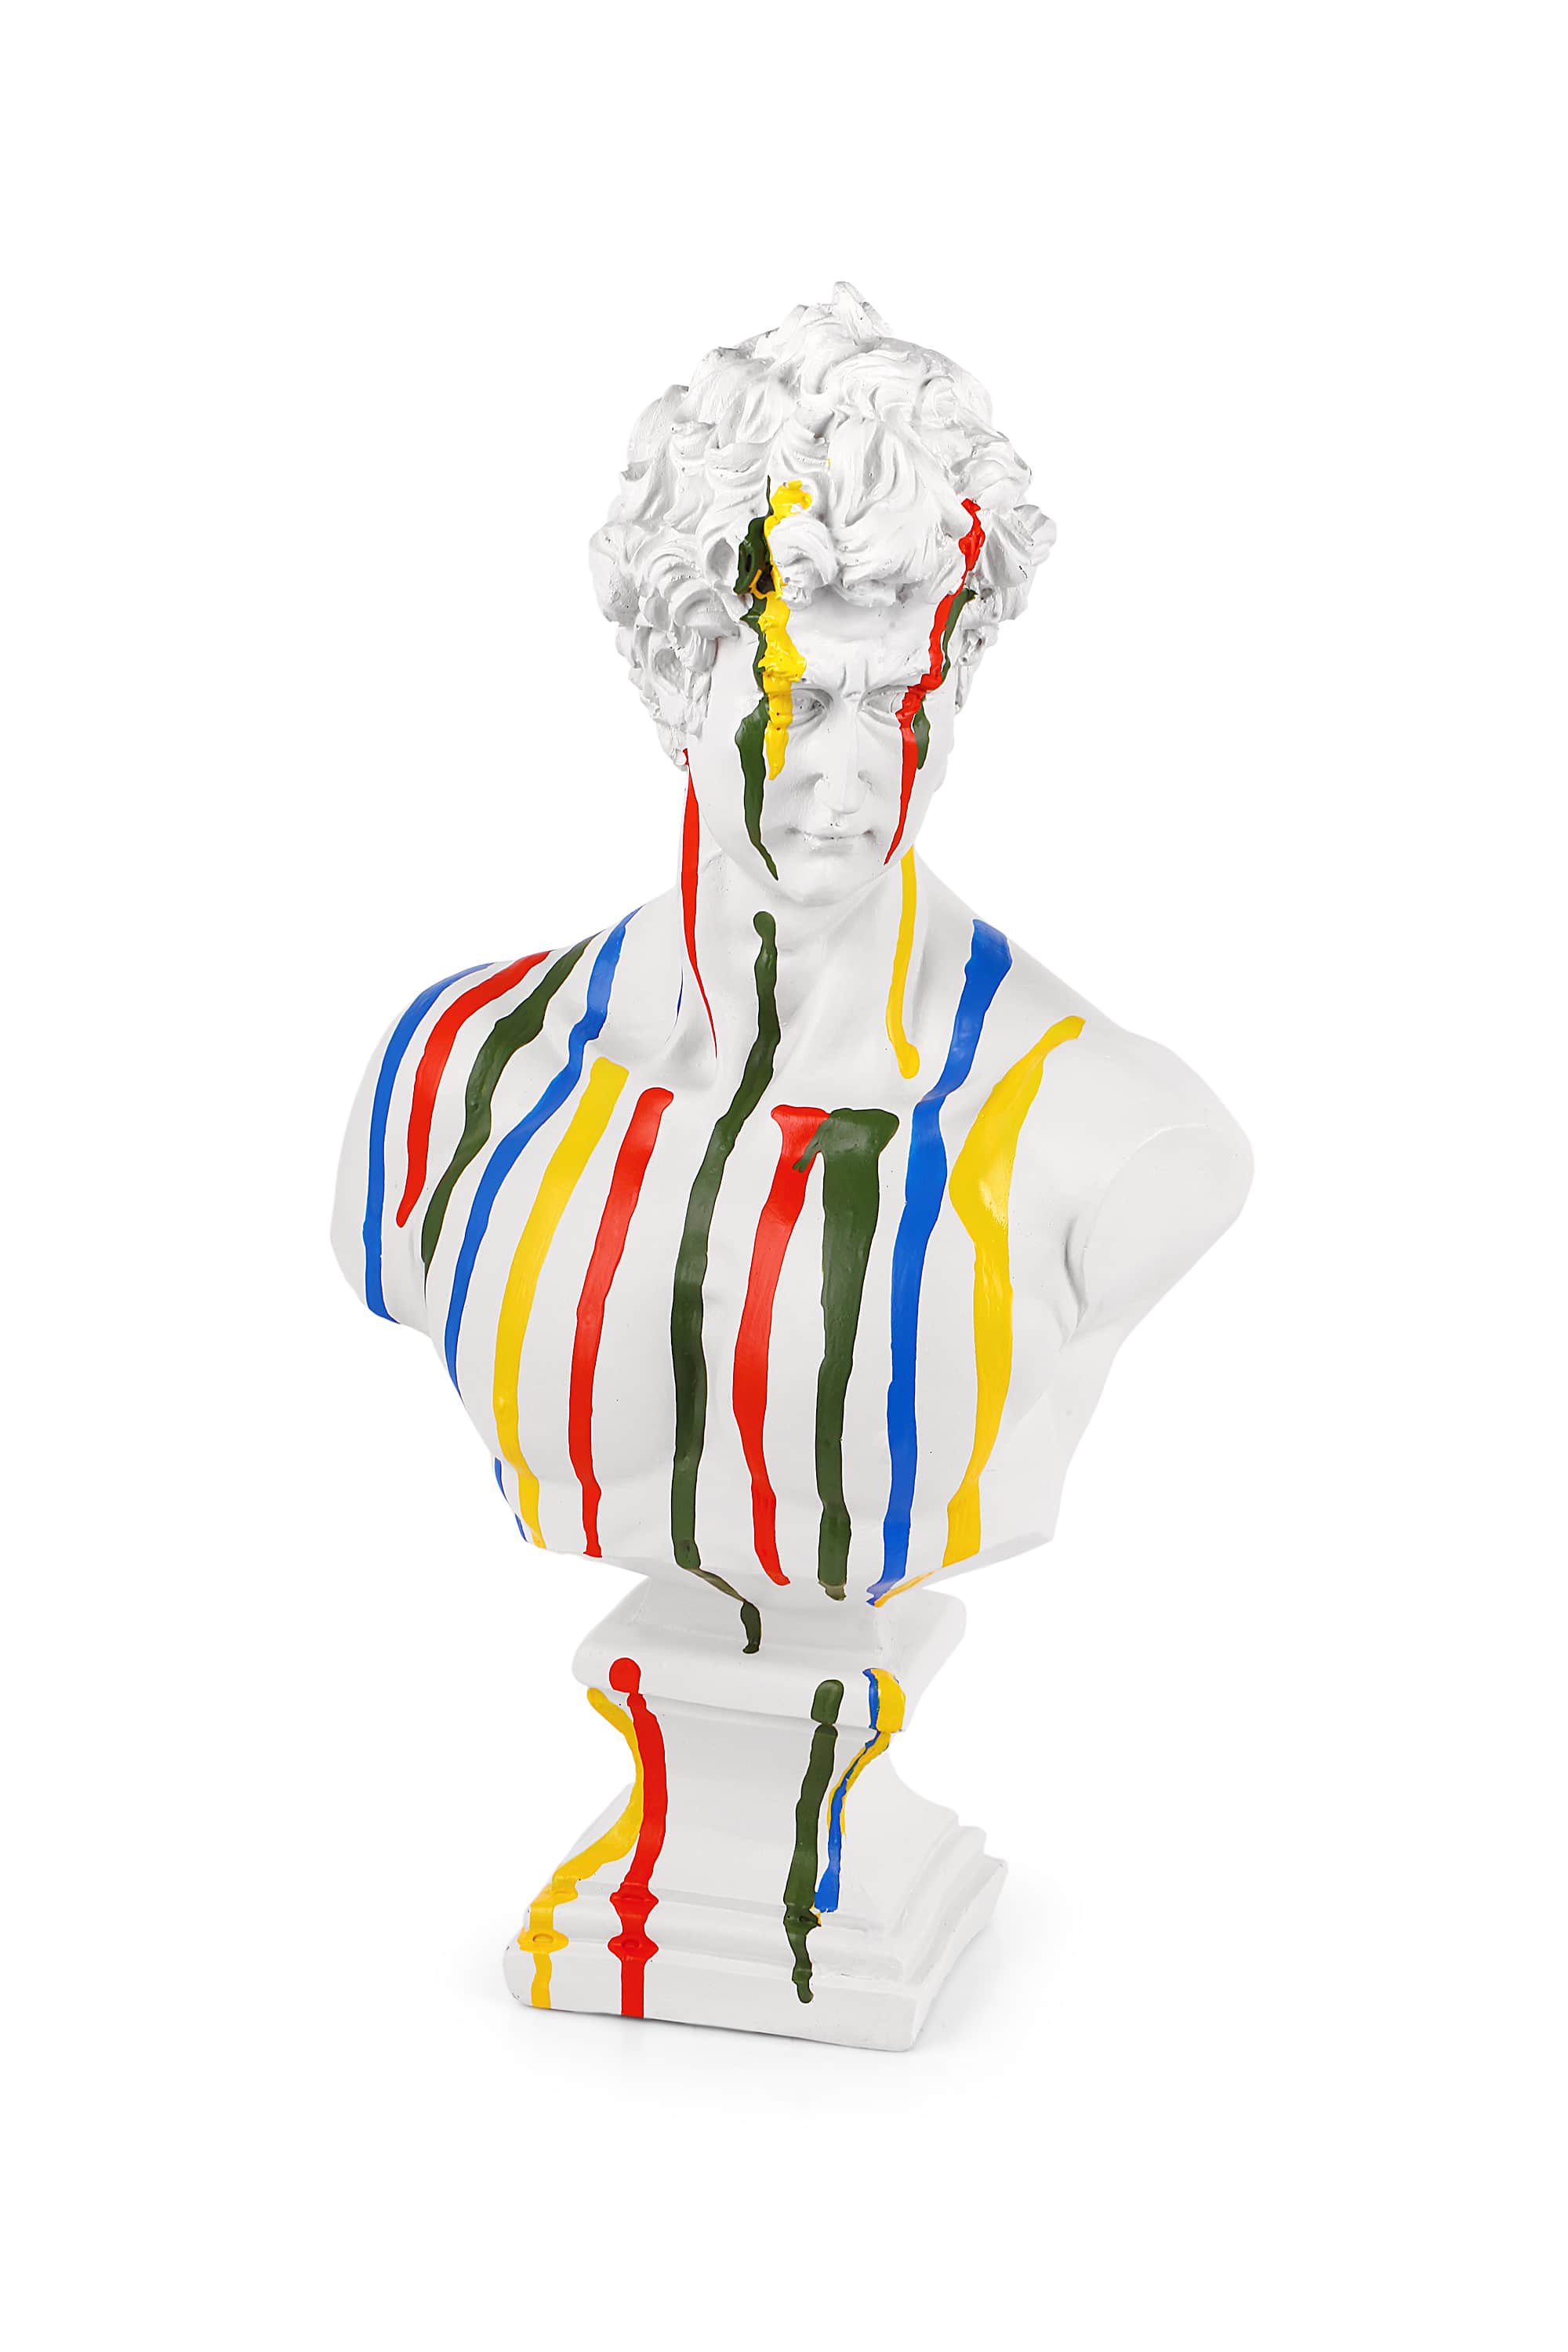 David/Davut Kaideli Beyaz Pop-art Büst Heykel